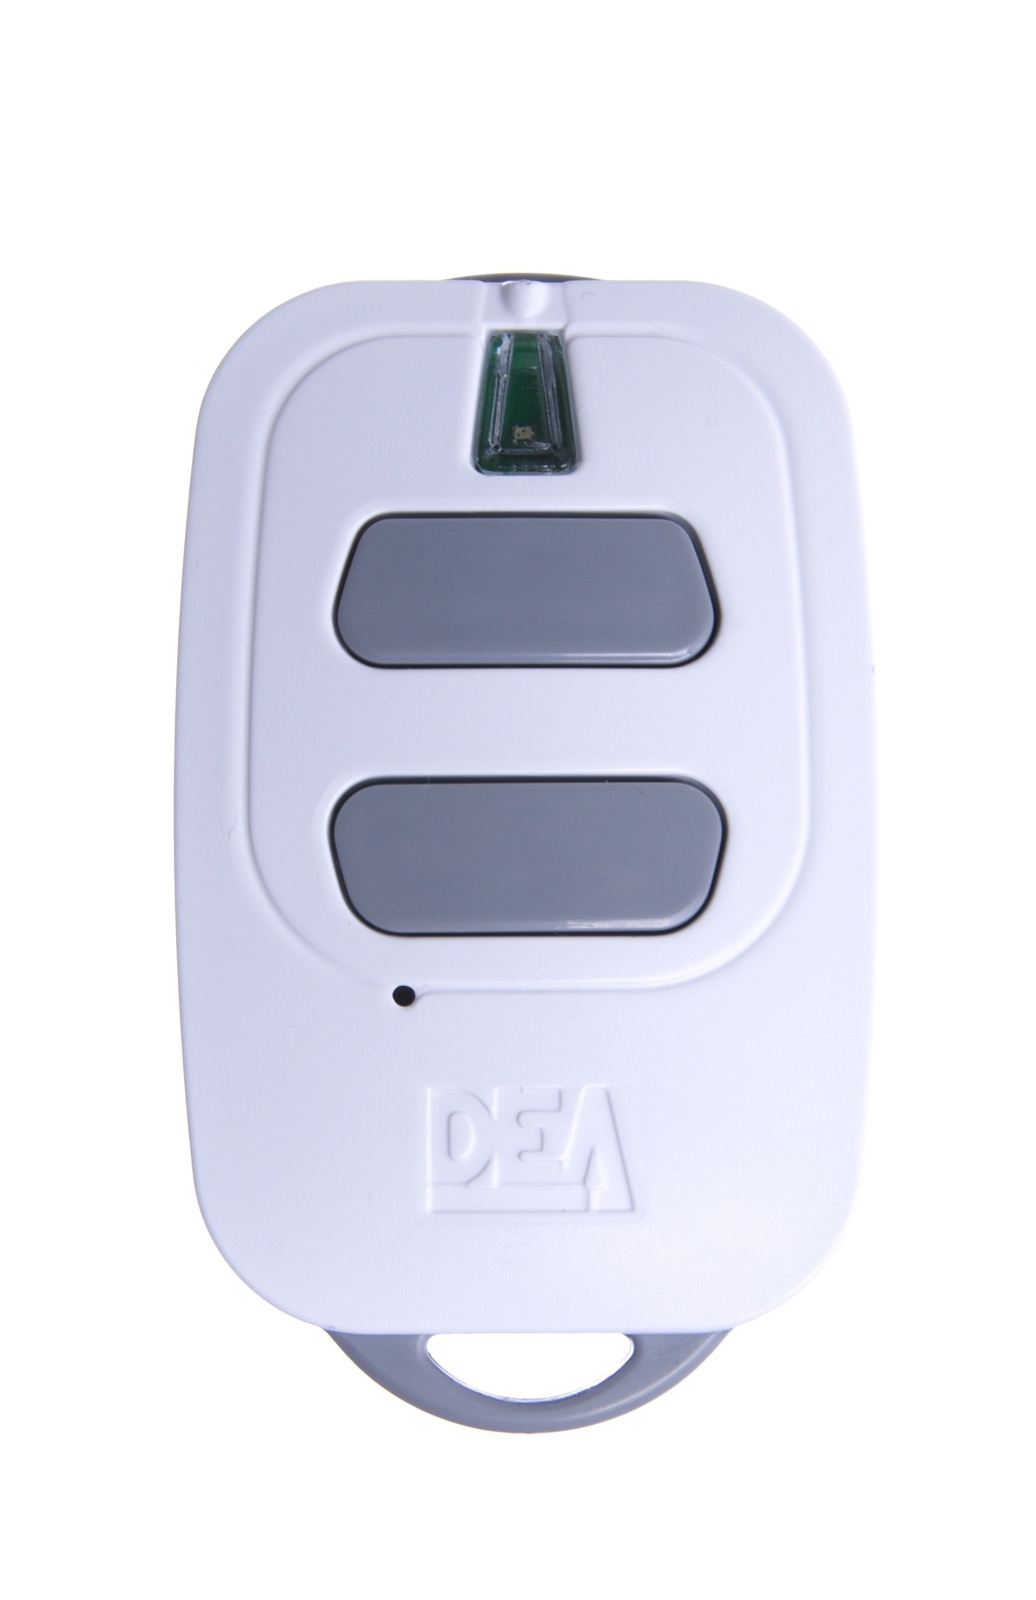 Dálkový ovládač Dea GT2M, dvoukanálový ovládač pro pohony DEA s plovoucím i pevným kódem